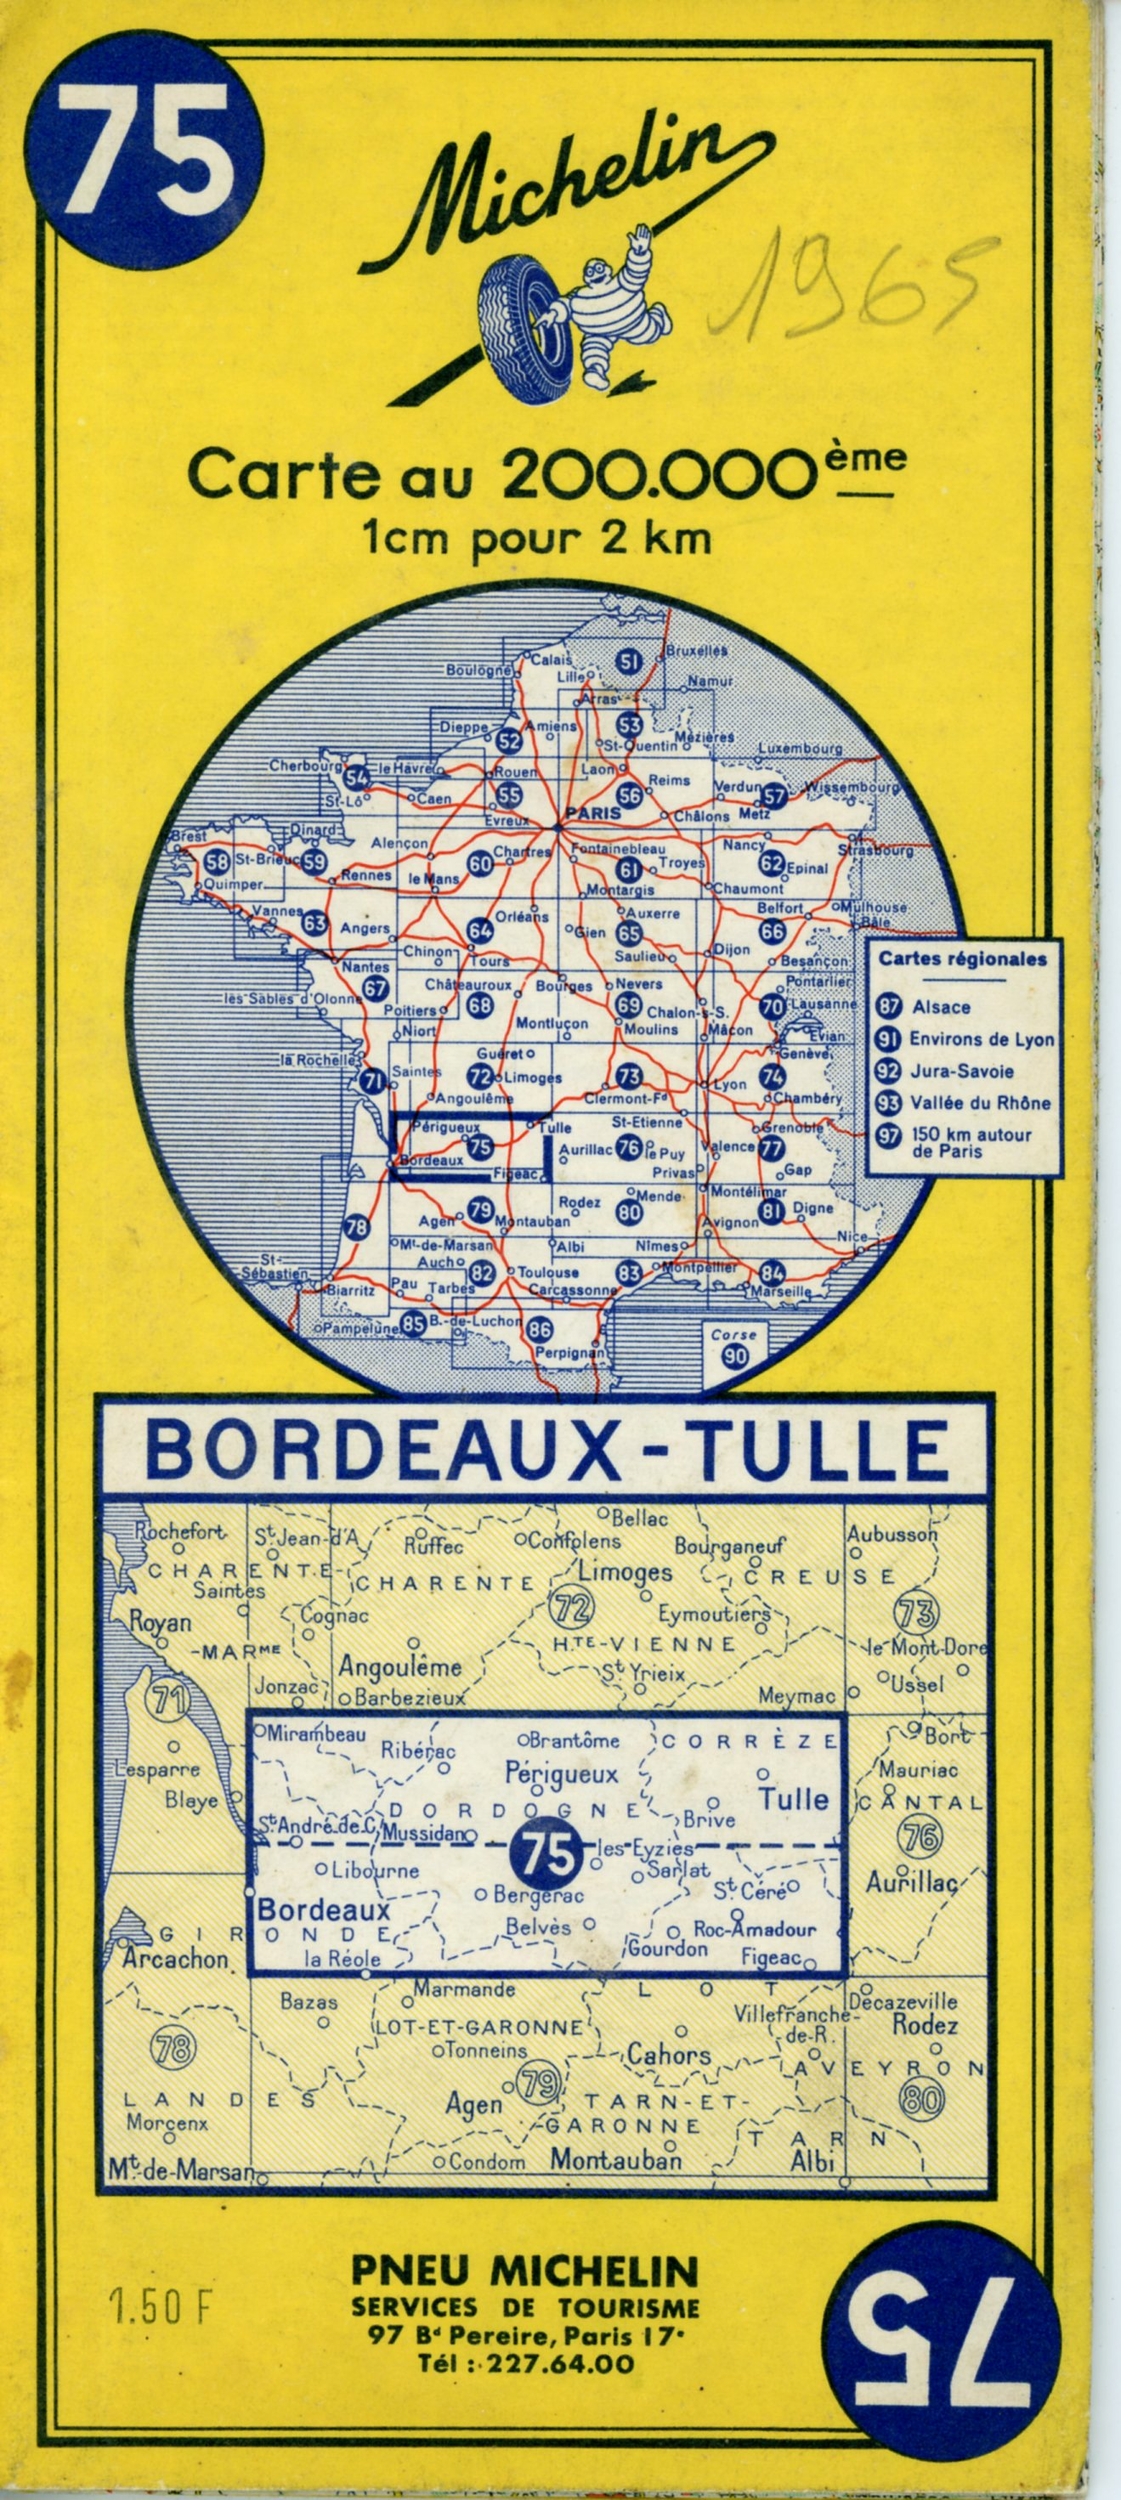 CARTE ROUTIÈRE MICHELIN N°75 BORDEAUX TULLE 1965 - COLLECTION CARTE MICHELIN